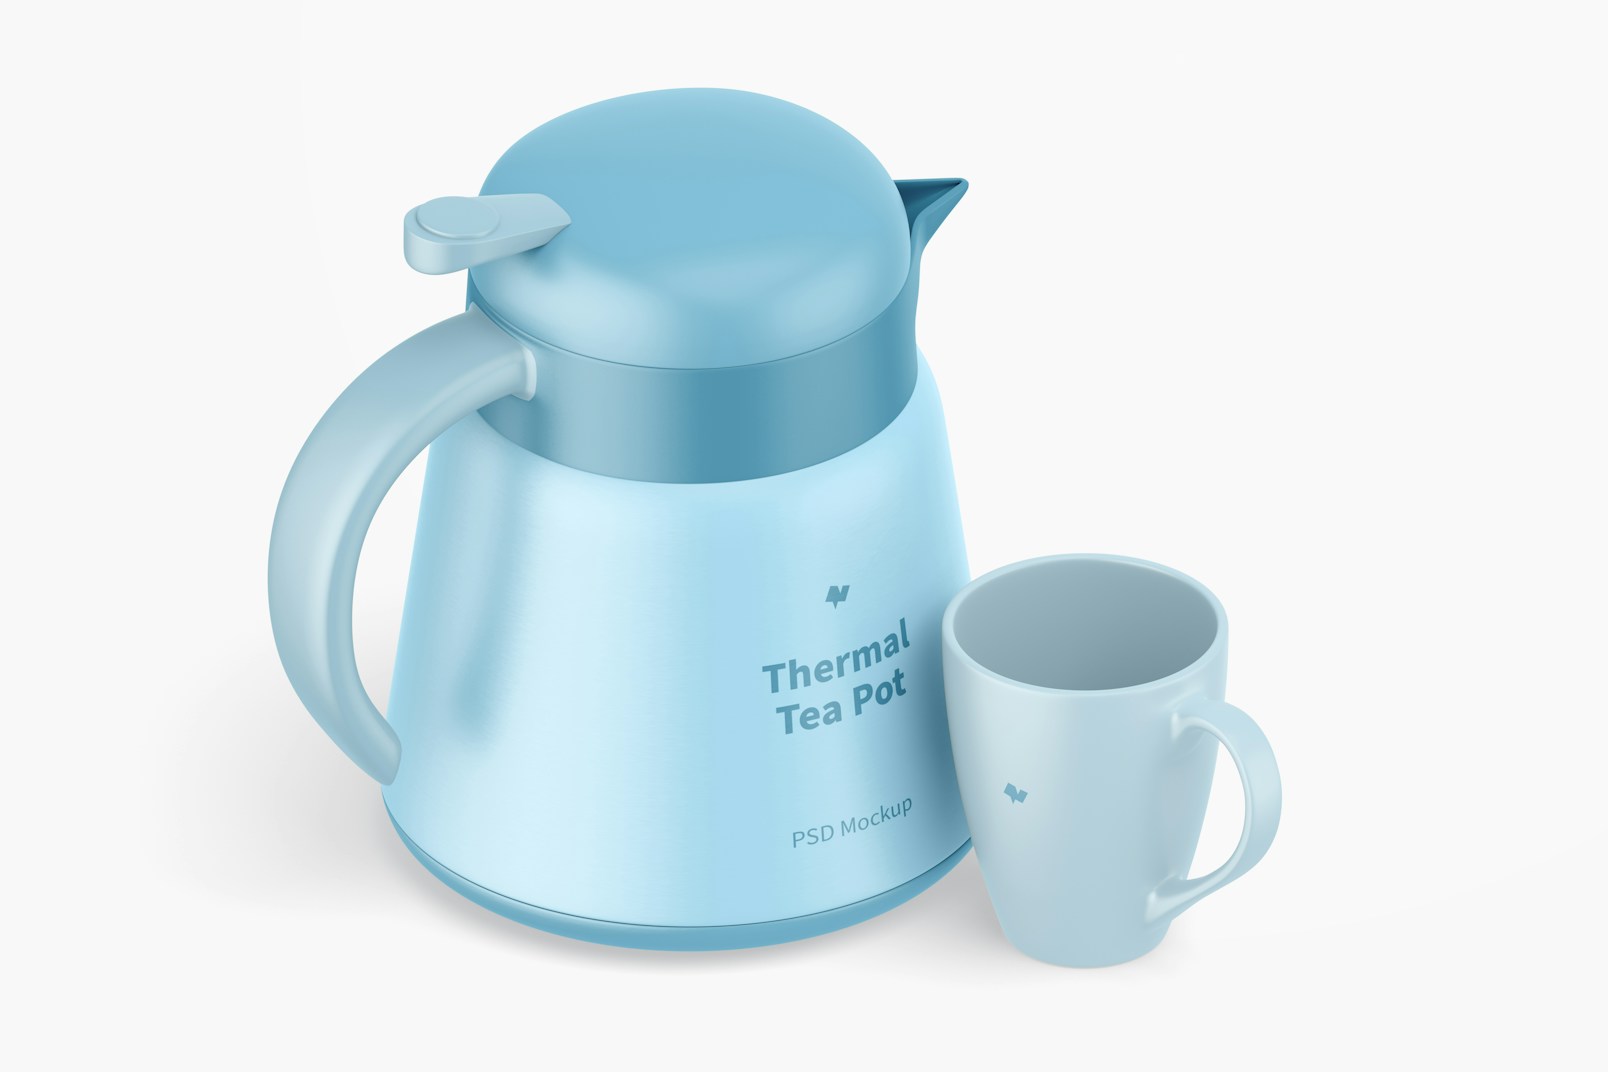 Thermal Tea Pot with Mug Mockup, Isometric View